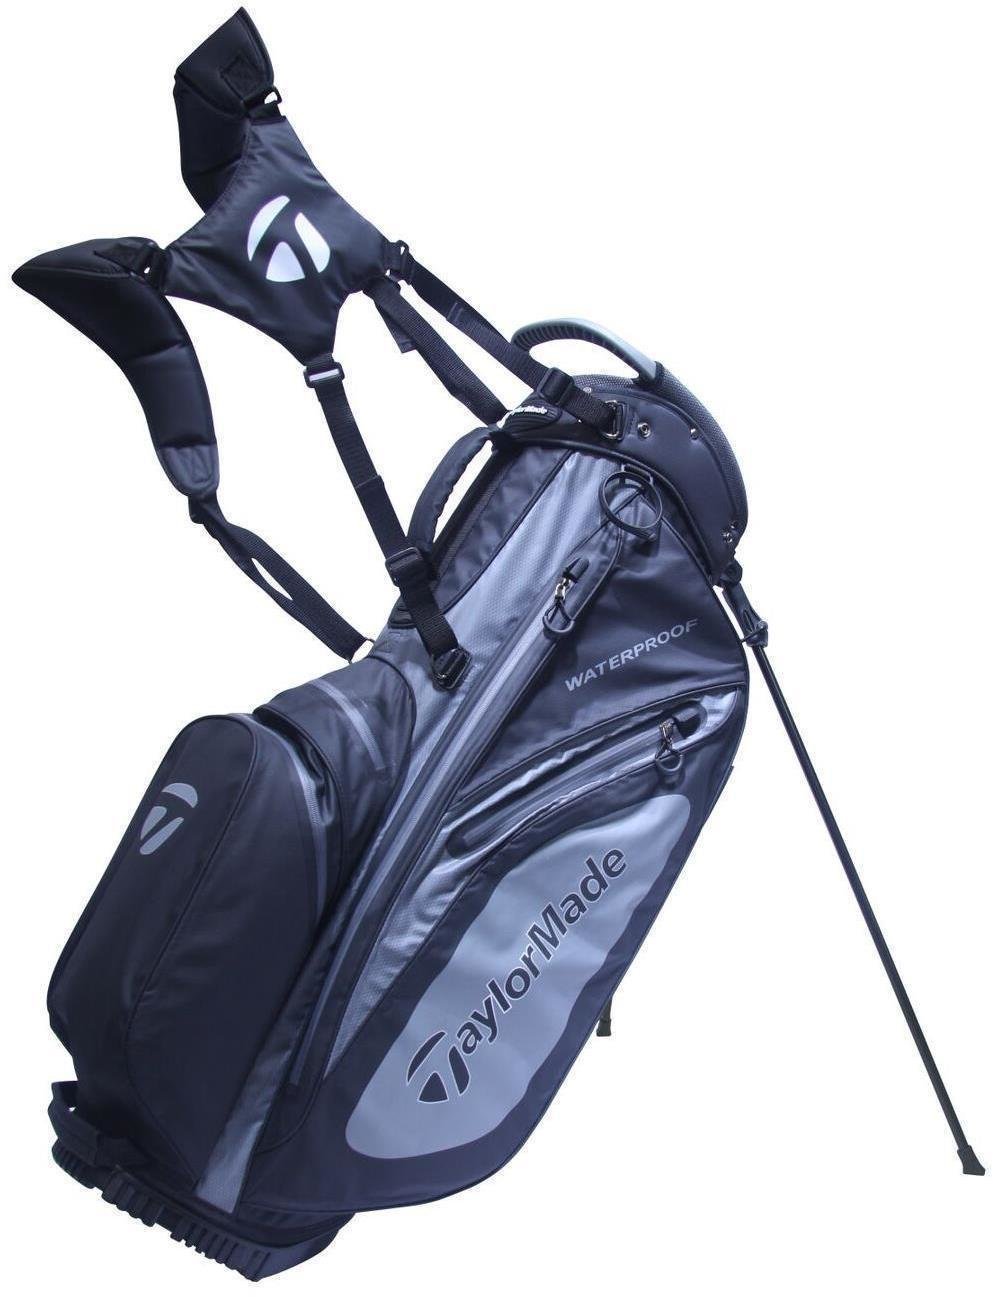 Borsa da golf Stand Bag TaylorMade Flextech Waterproof Black/Charcoal Stand Bag 2017